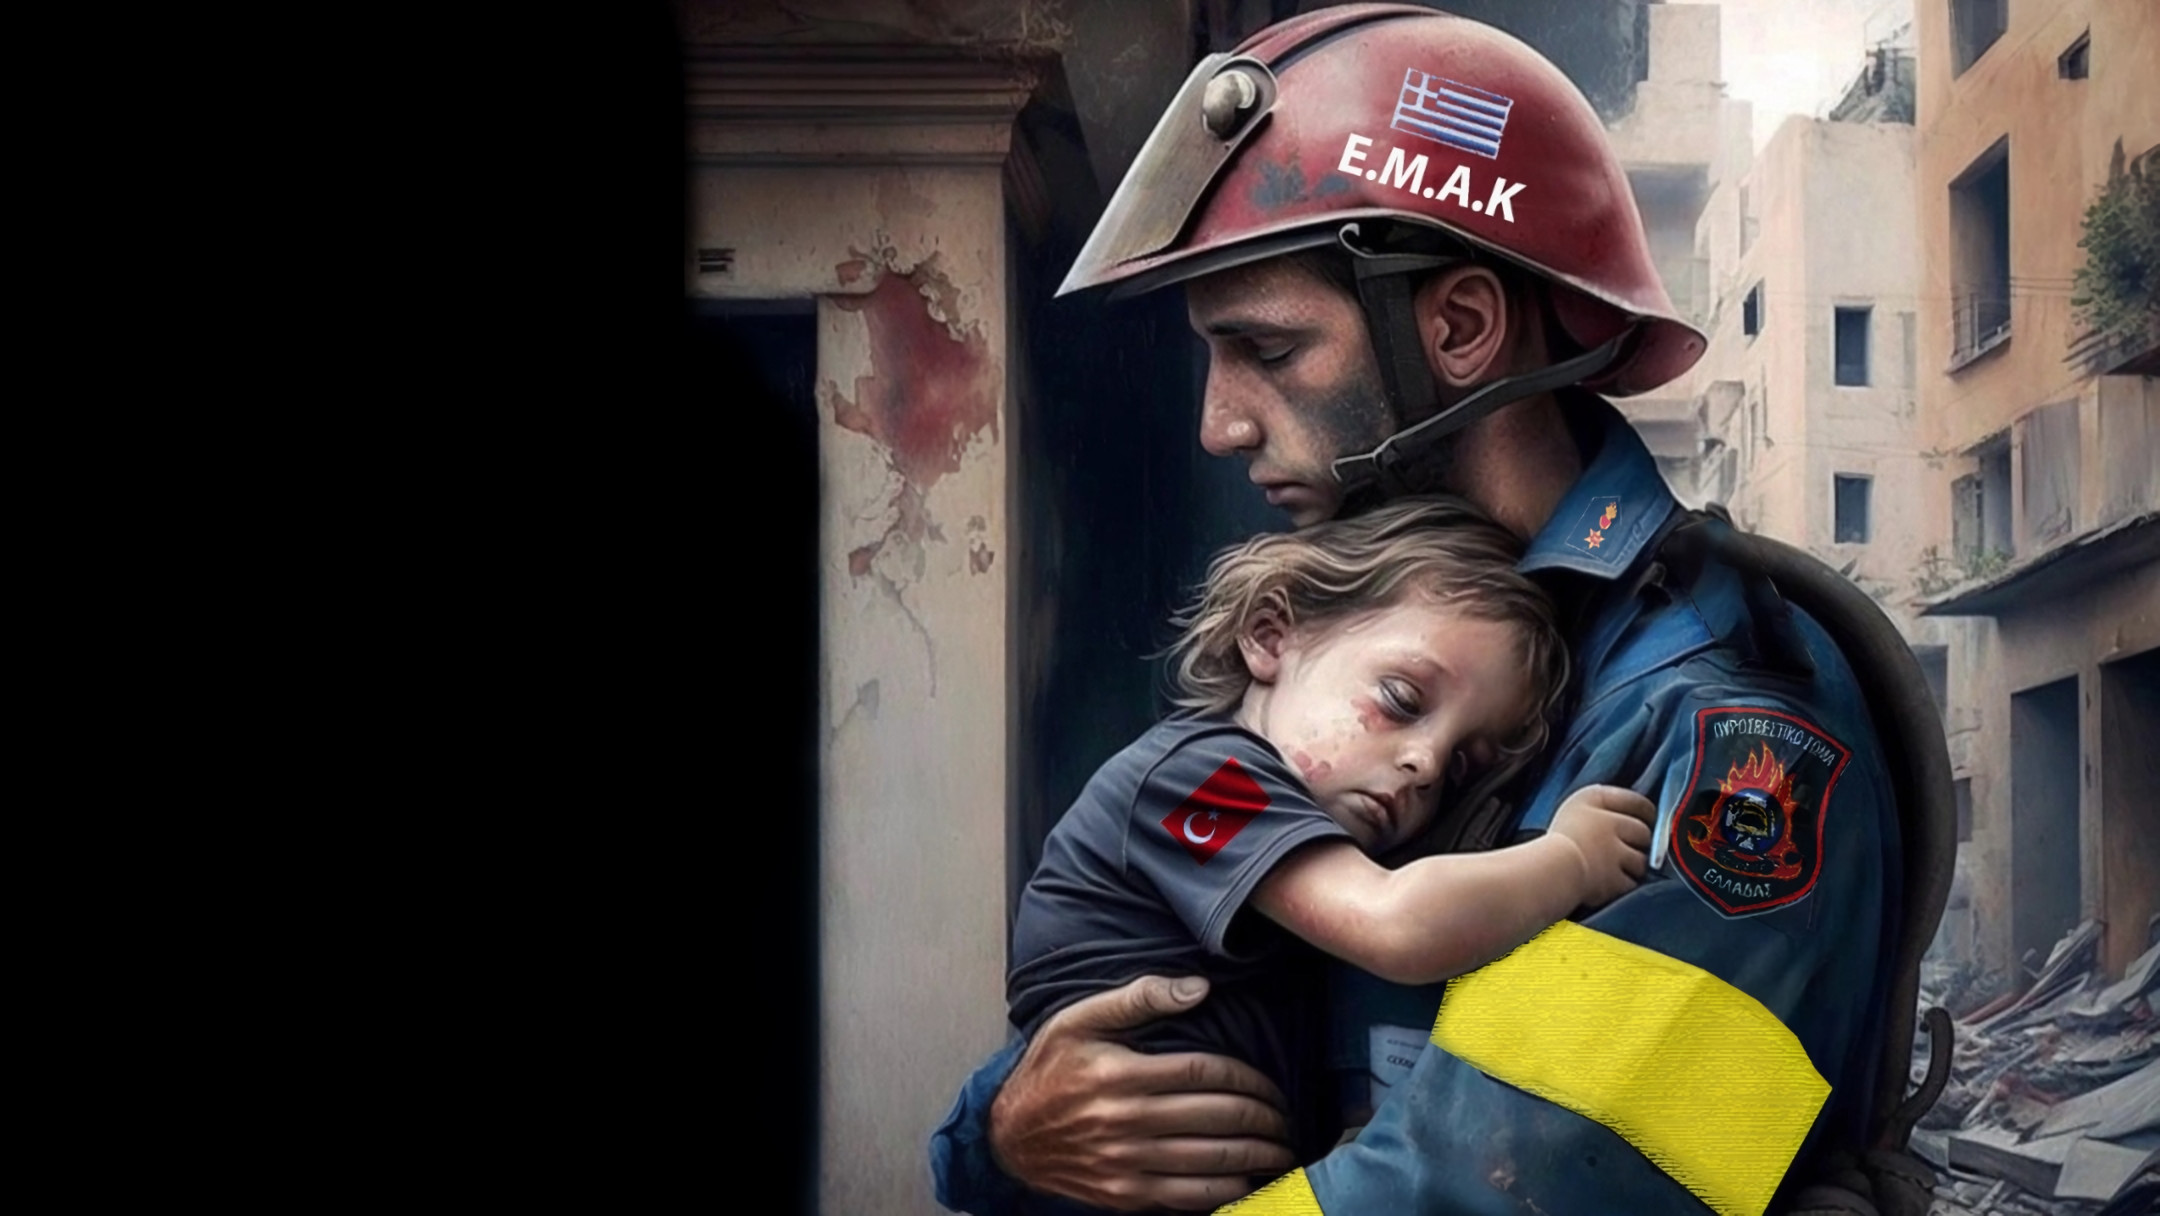 ΕΜΑΚ Τουρκία – σκίτσο: Η ιστορία πίσω από τη viral εικόνα με τον πυροσβέστη